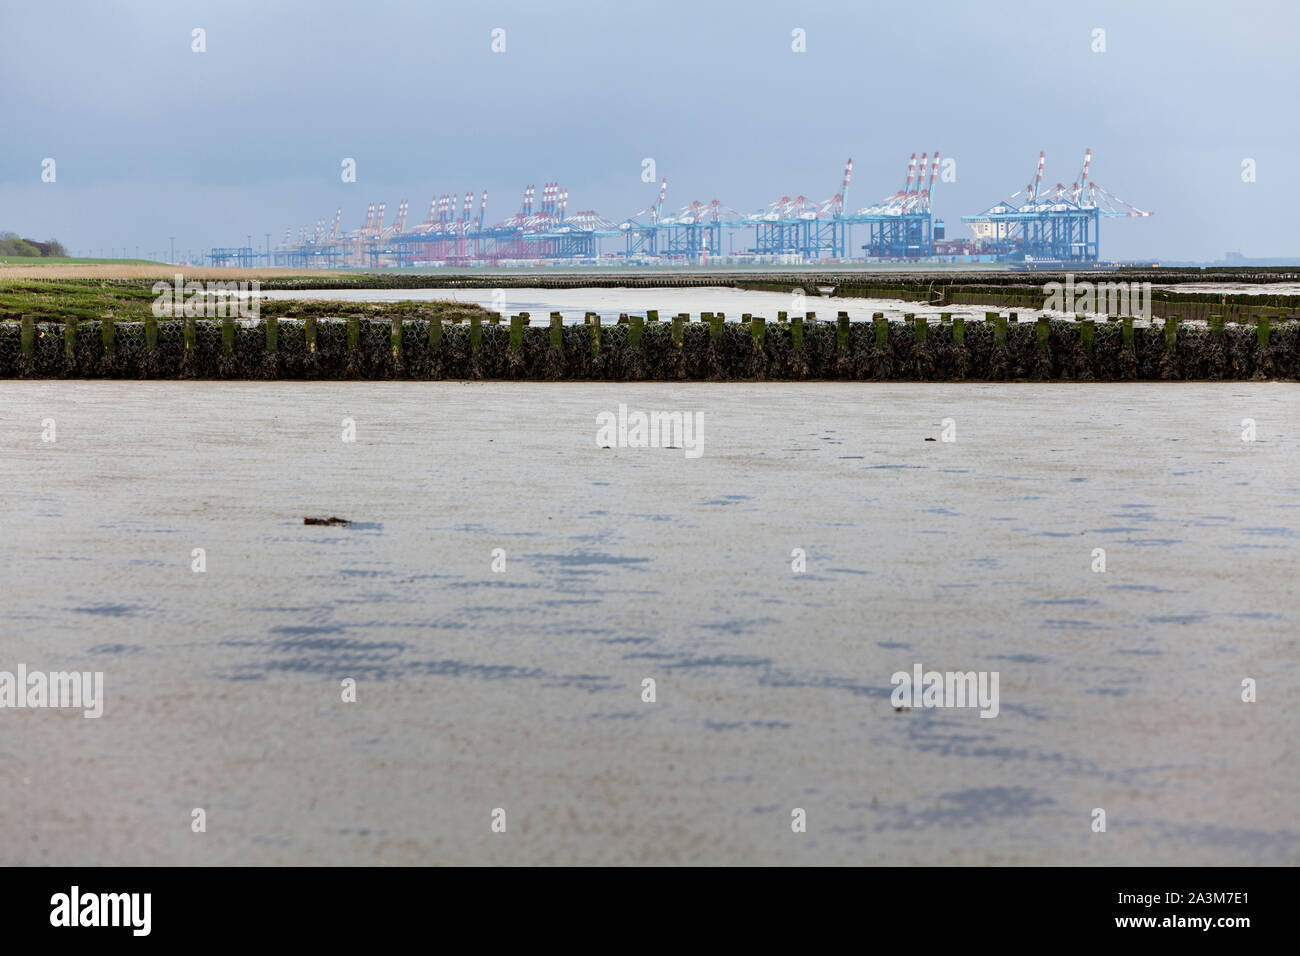 Vue du port de Bremerhaven Bremerhaven, ville hanséatique libre de Brême, Allemagne, Europe Banque D'Images